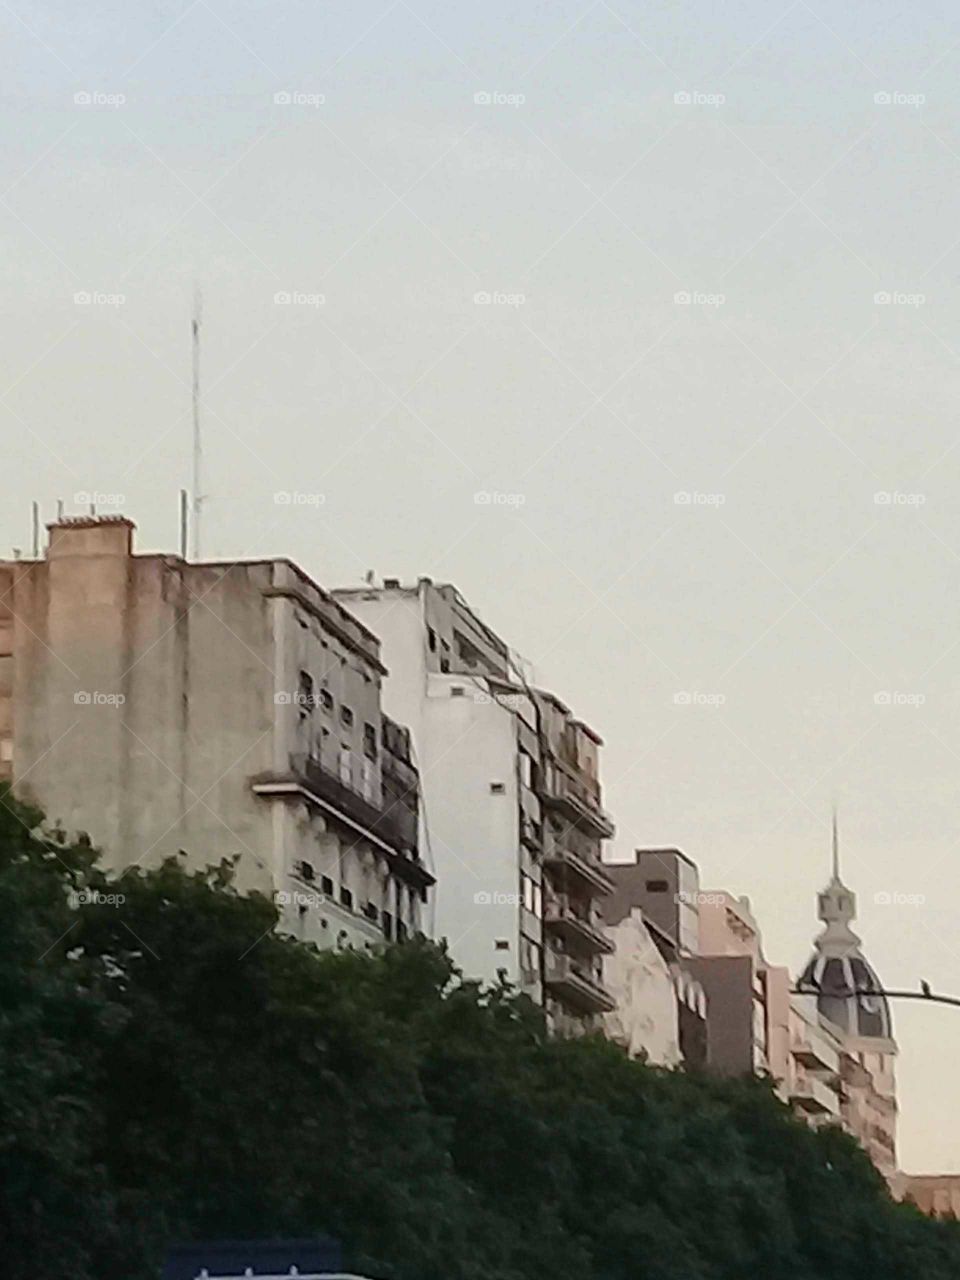 vista de típicos edificios de una ciudad